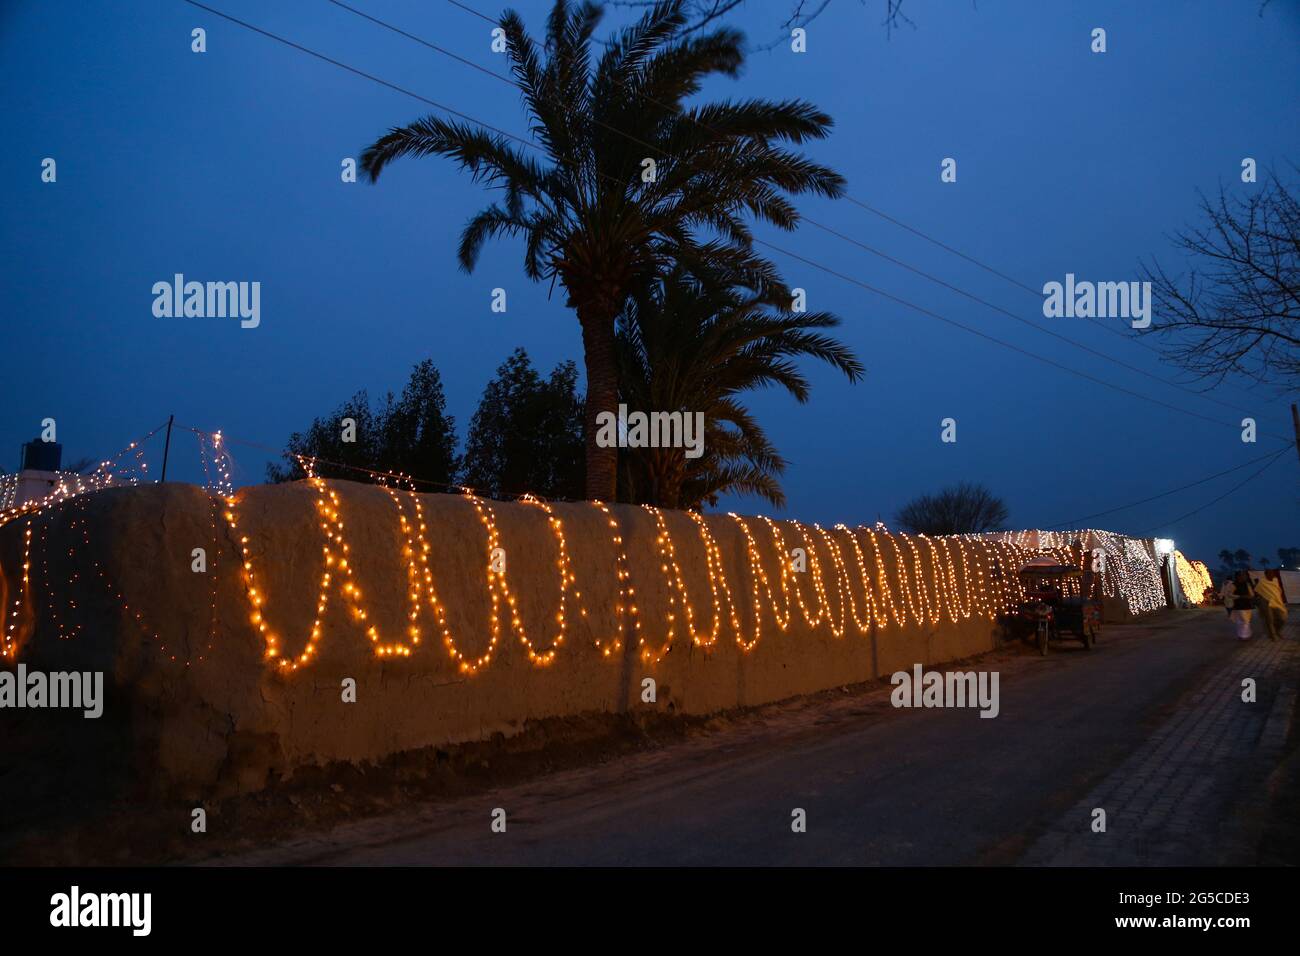 Dekorative String-Lichter im Freien, die im Garten bei nächtlichen Festen an Bäumen hängen Stockfoto